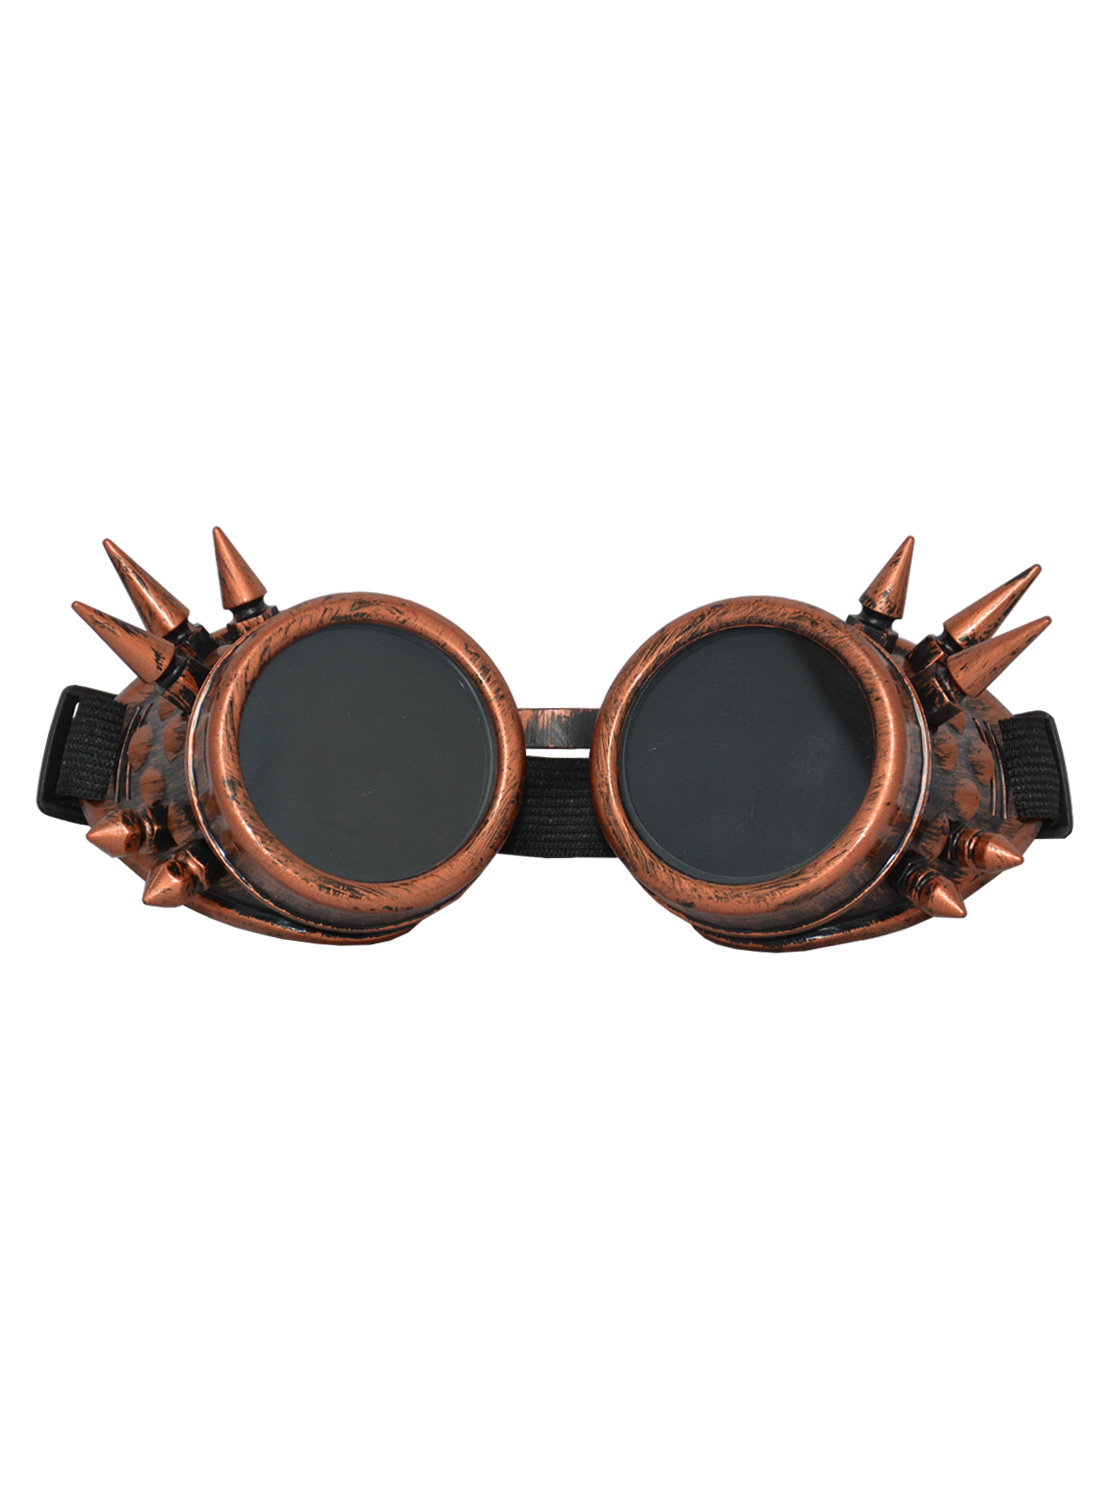 Sp Goggles Rivet Bronze Black Lens